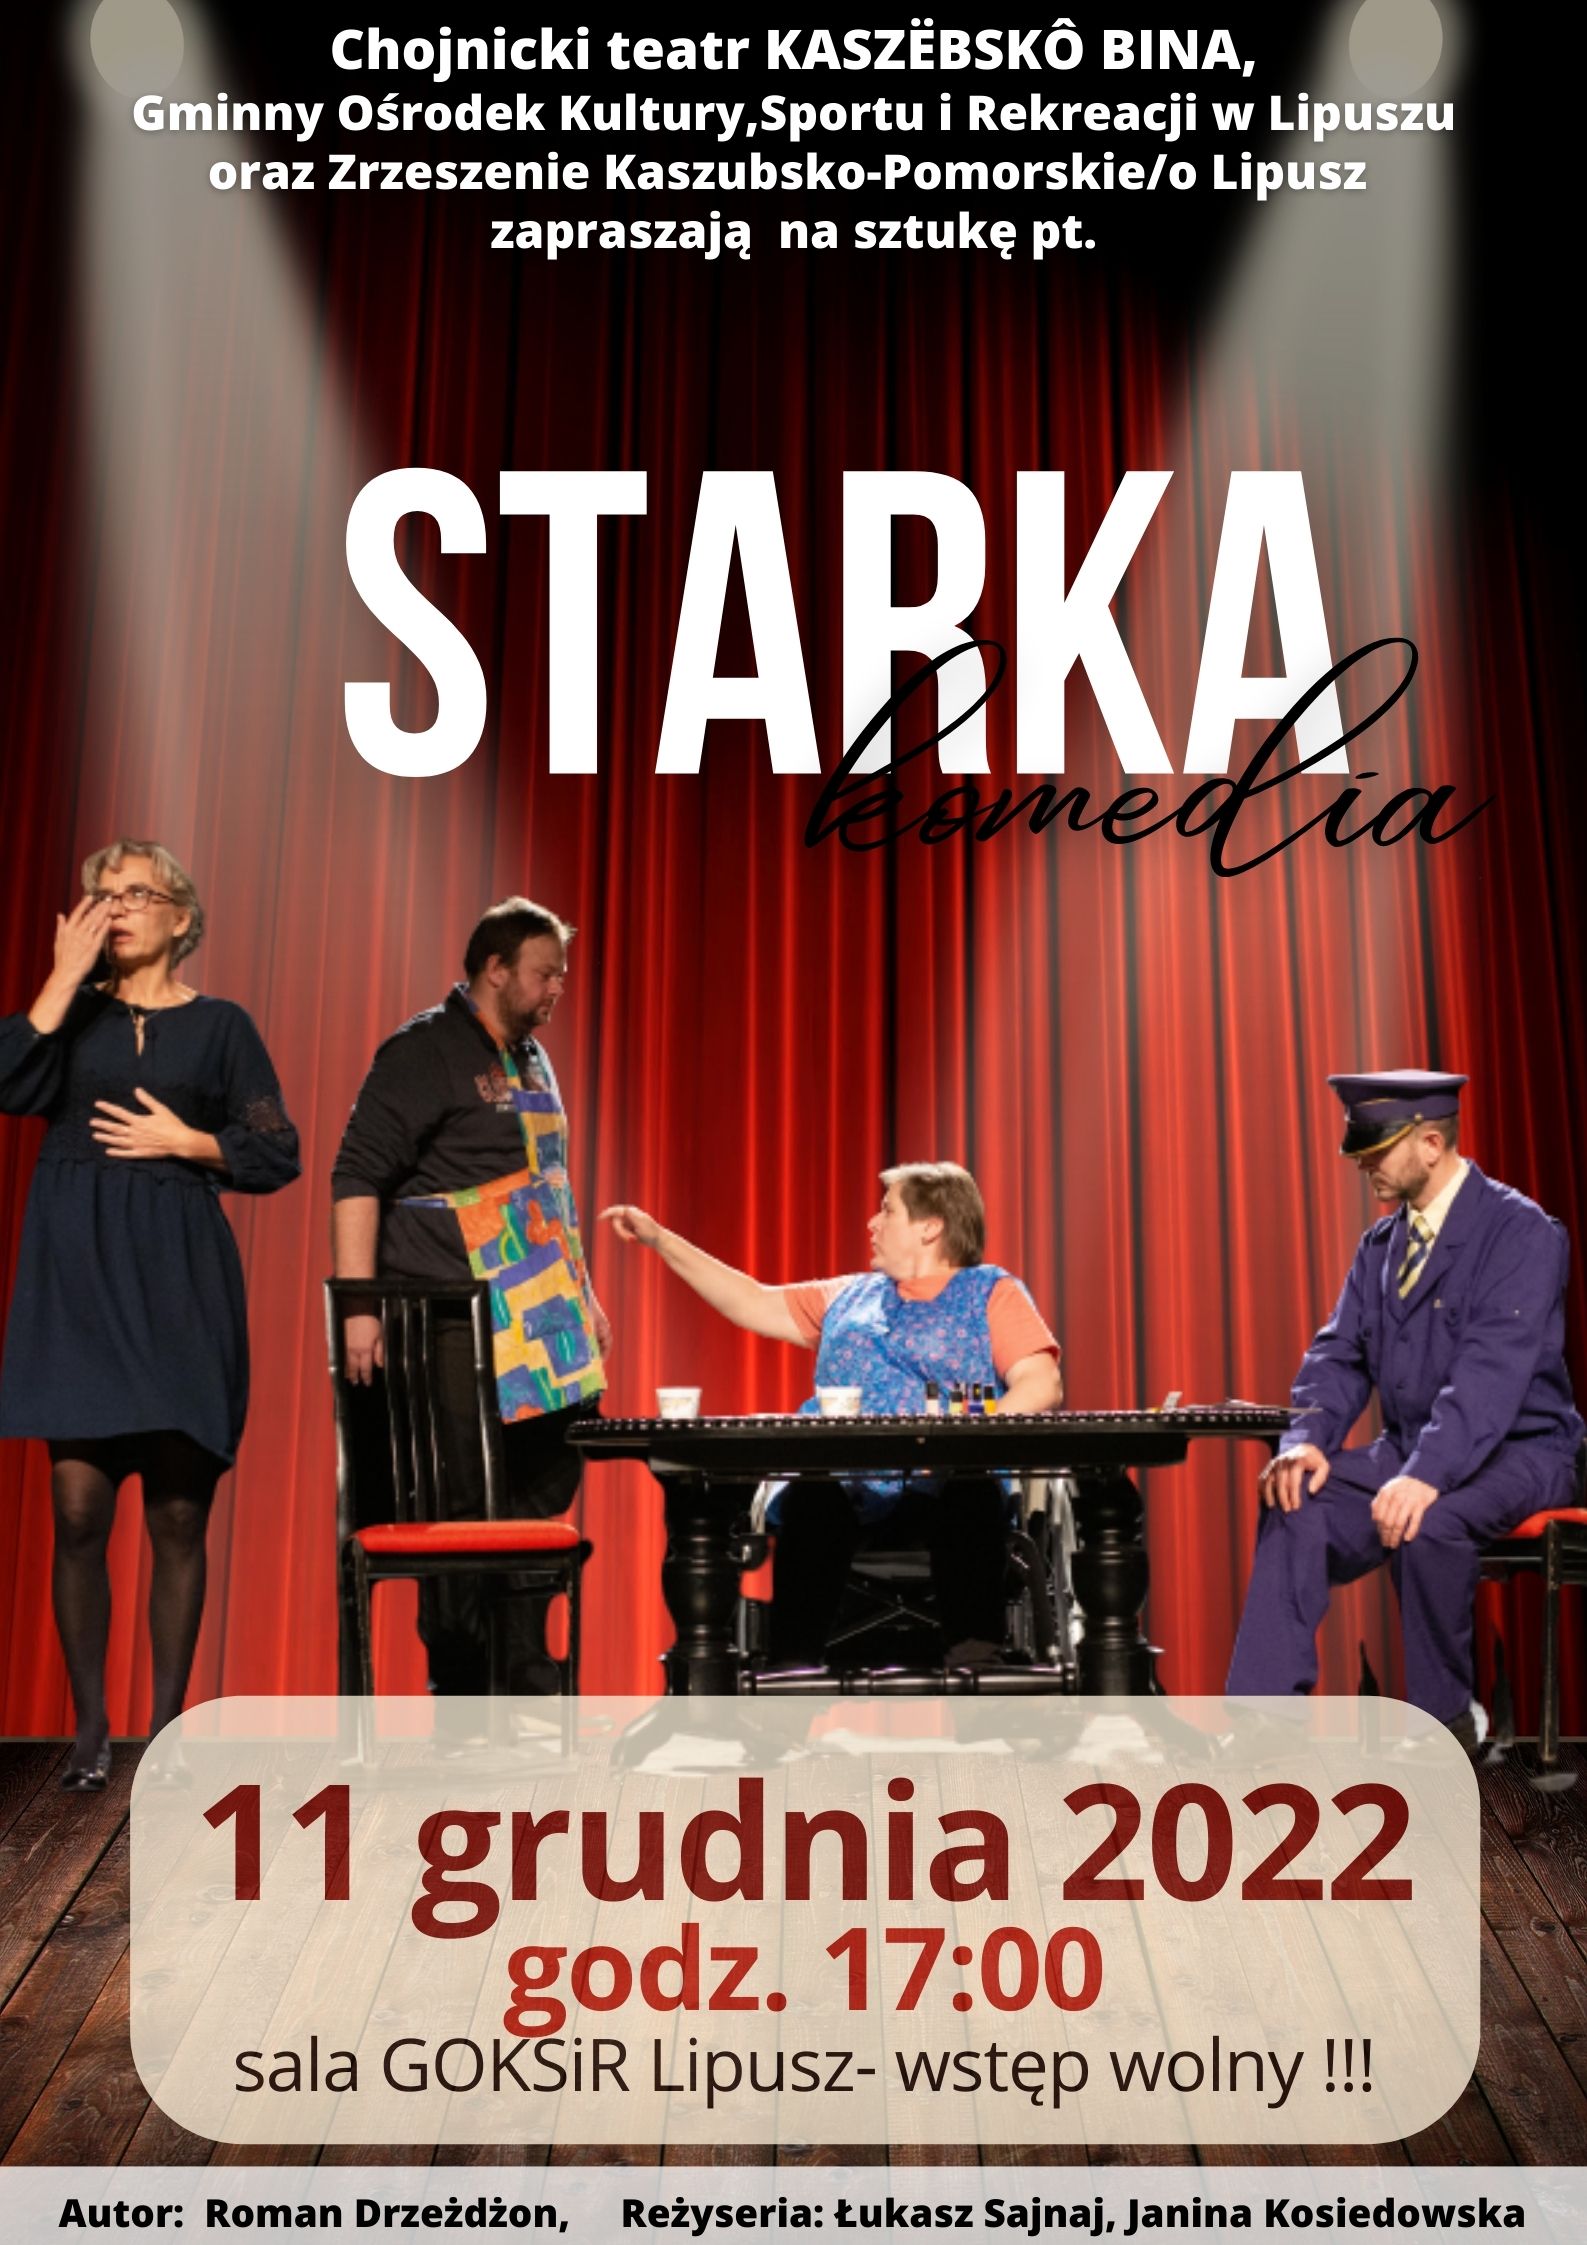 plakat z informacją o sztuce STARKA komedia na sali GOKSiR Lipusz